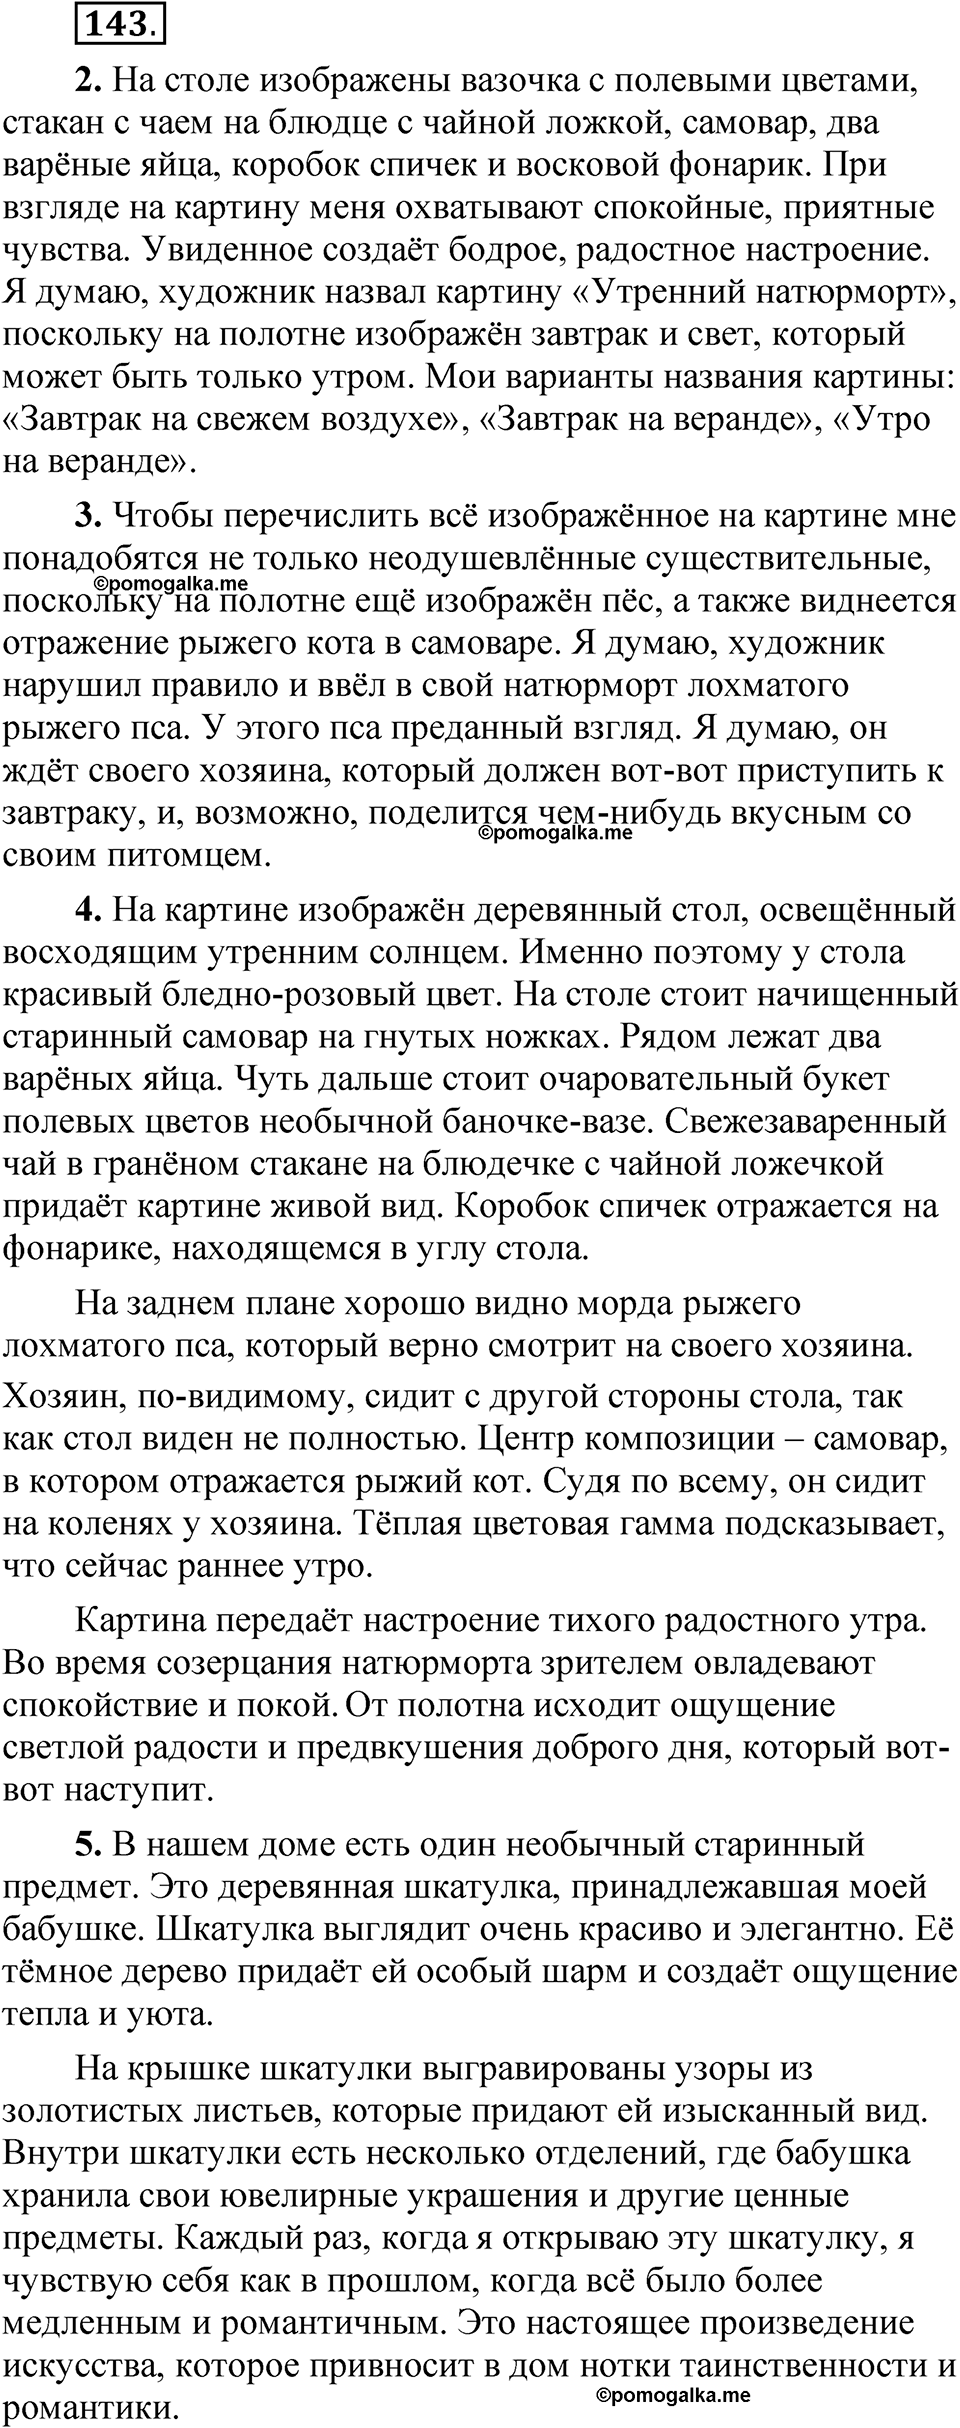 страница 98 упражнение 143 русский язык 5 класс Быстрова, Кибирева 2 часть 2021 год